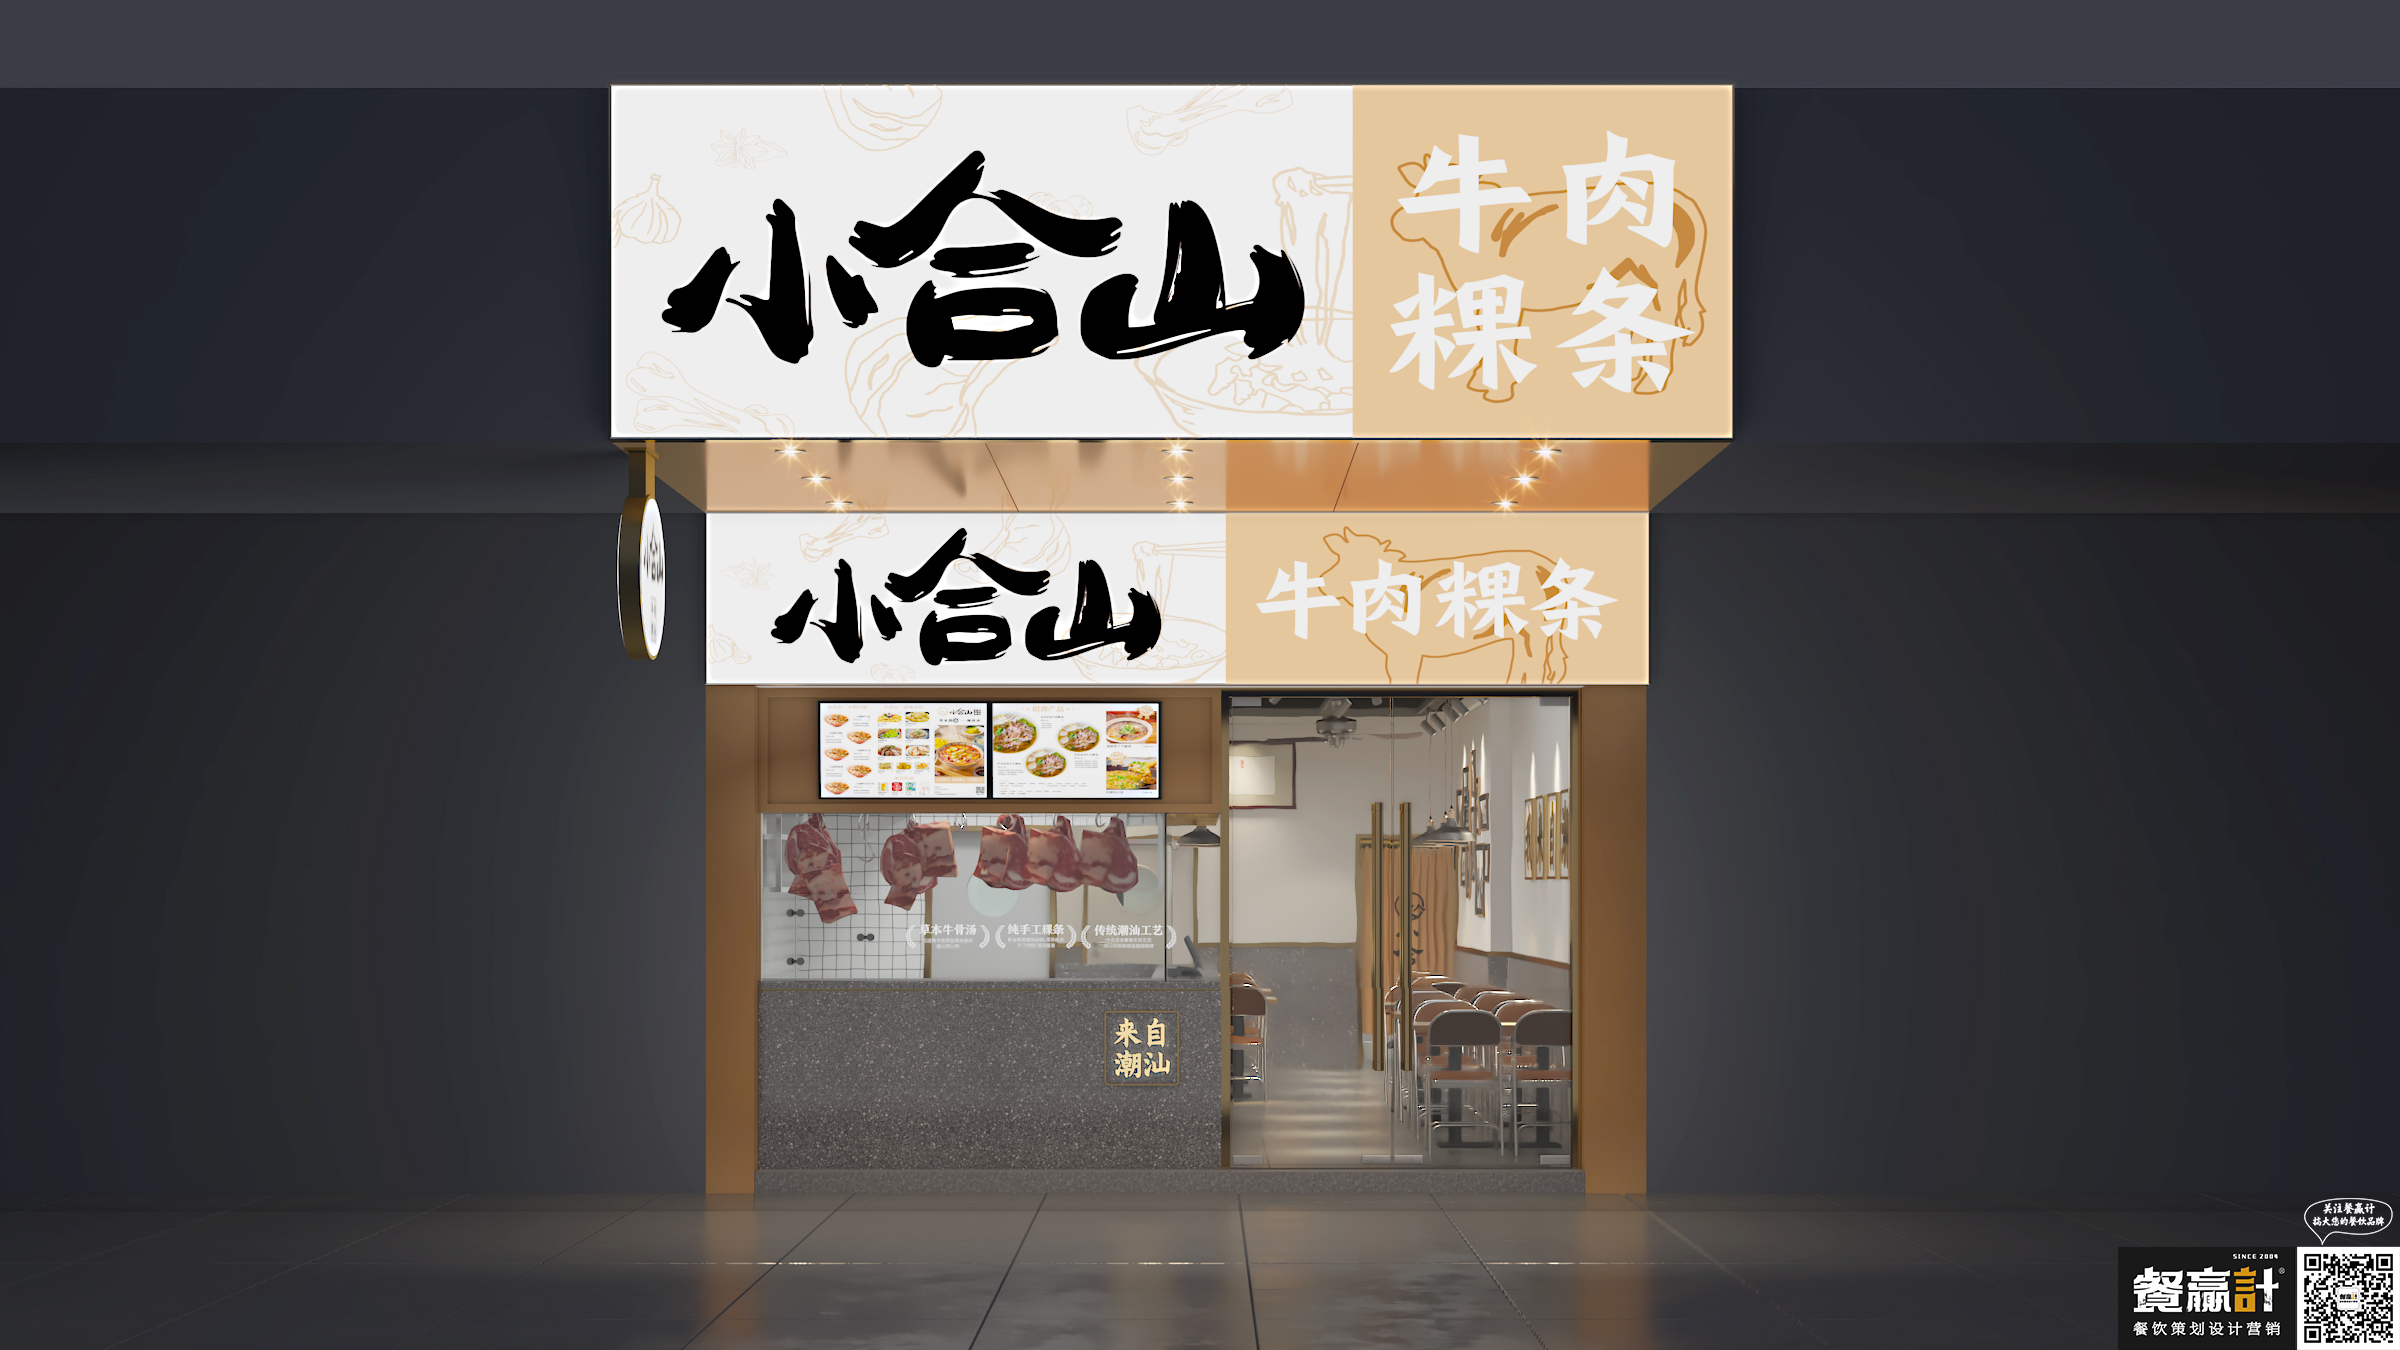 烤鱼小合山——牛肉粿条餐厅空间设计